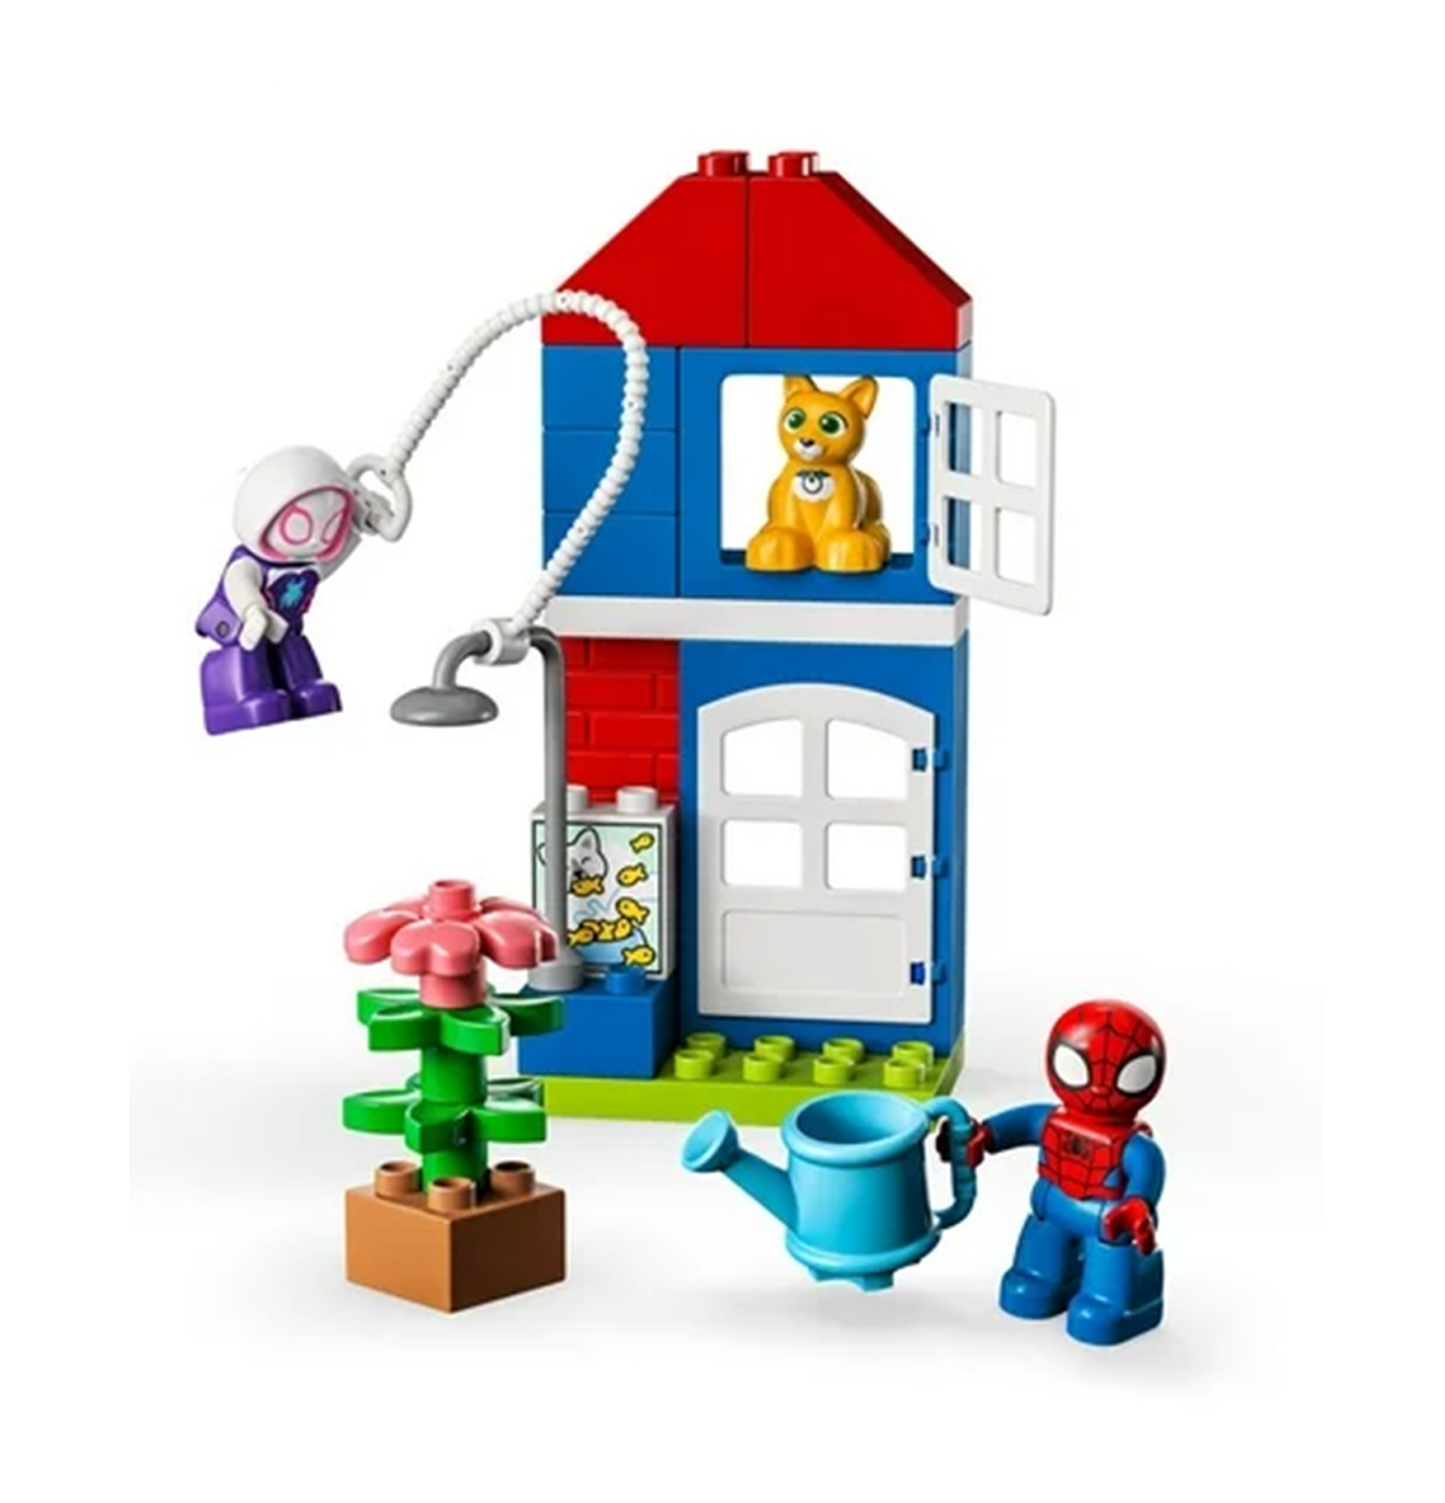 LEGO DUPLO Marvel Spider-Man's House Building Set (10995)